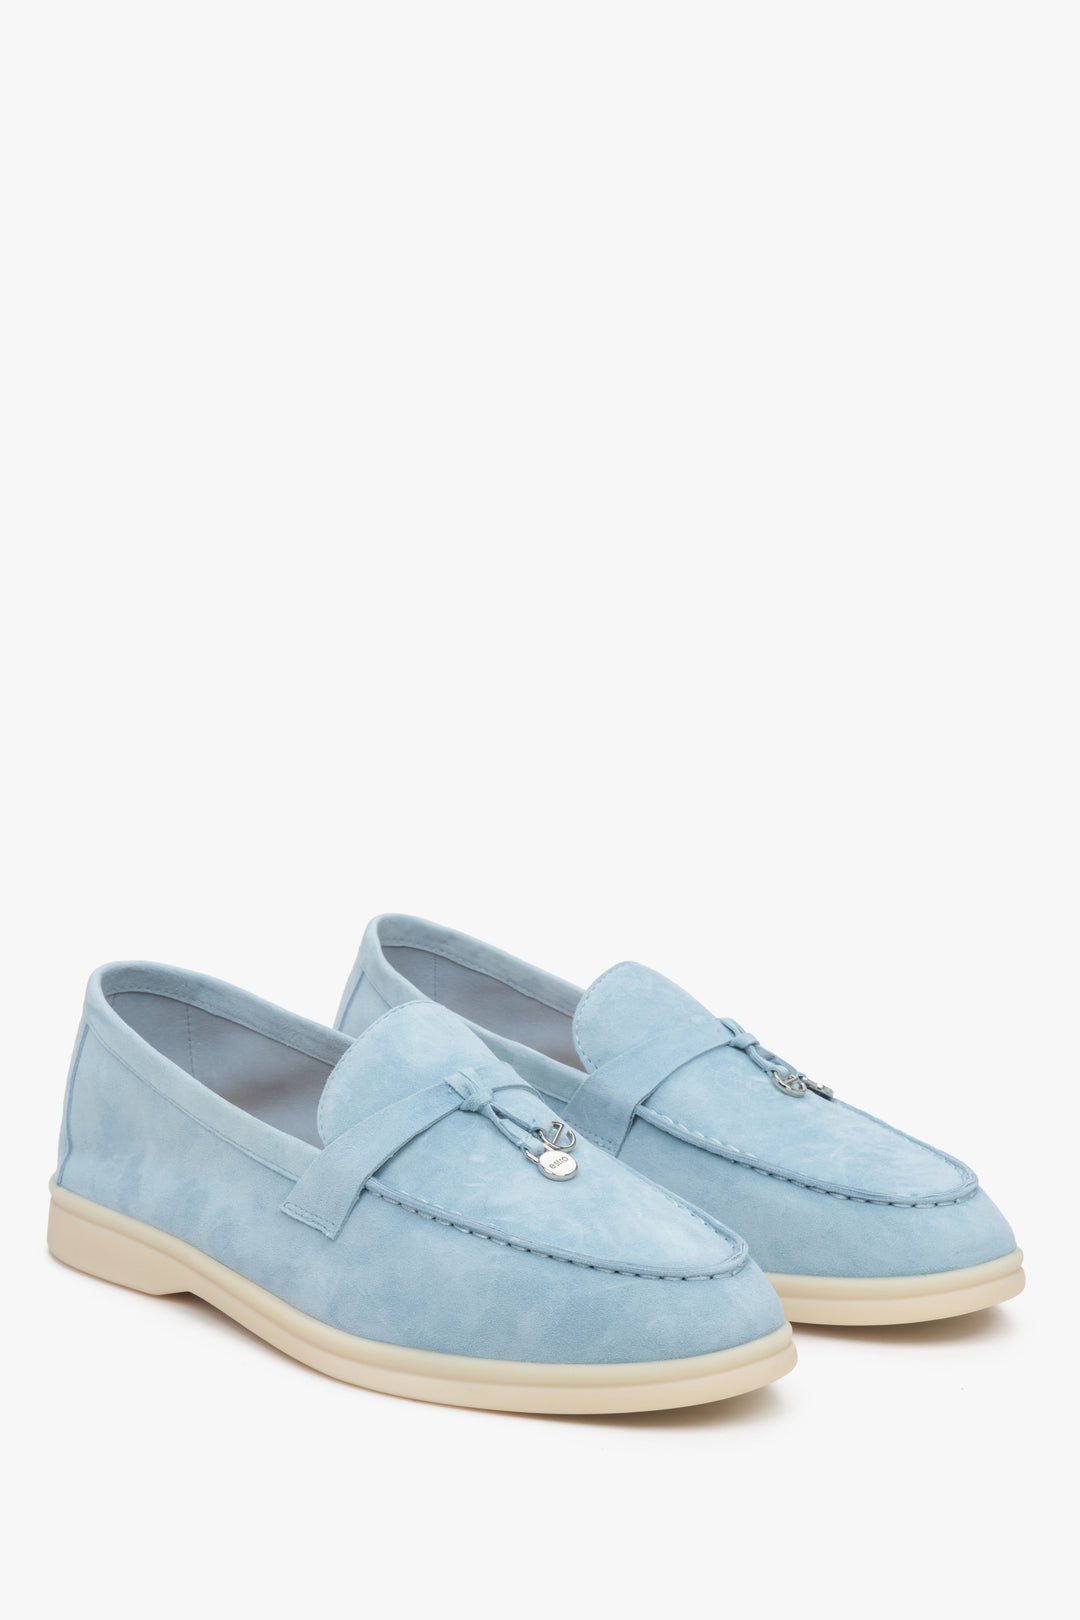 Light blue velour women's slip on loafers,